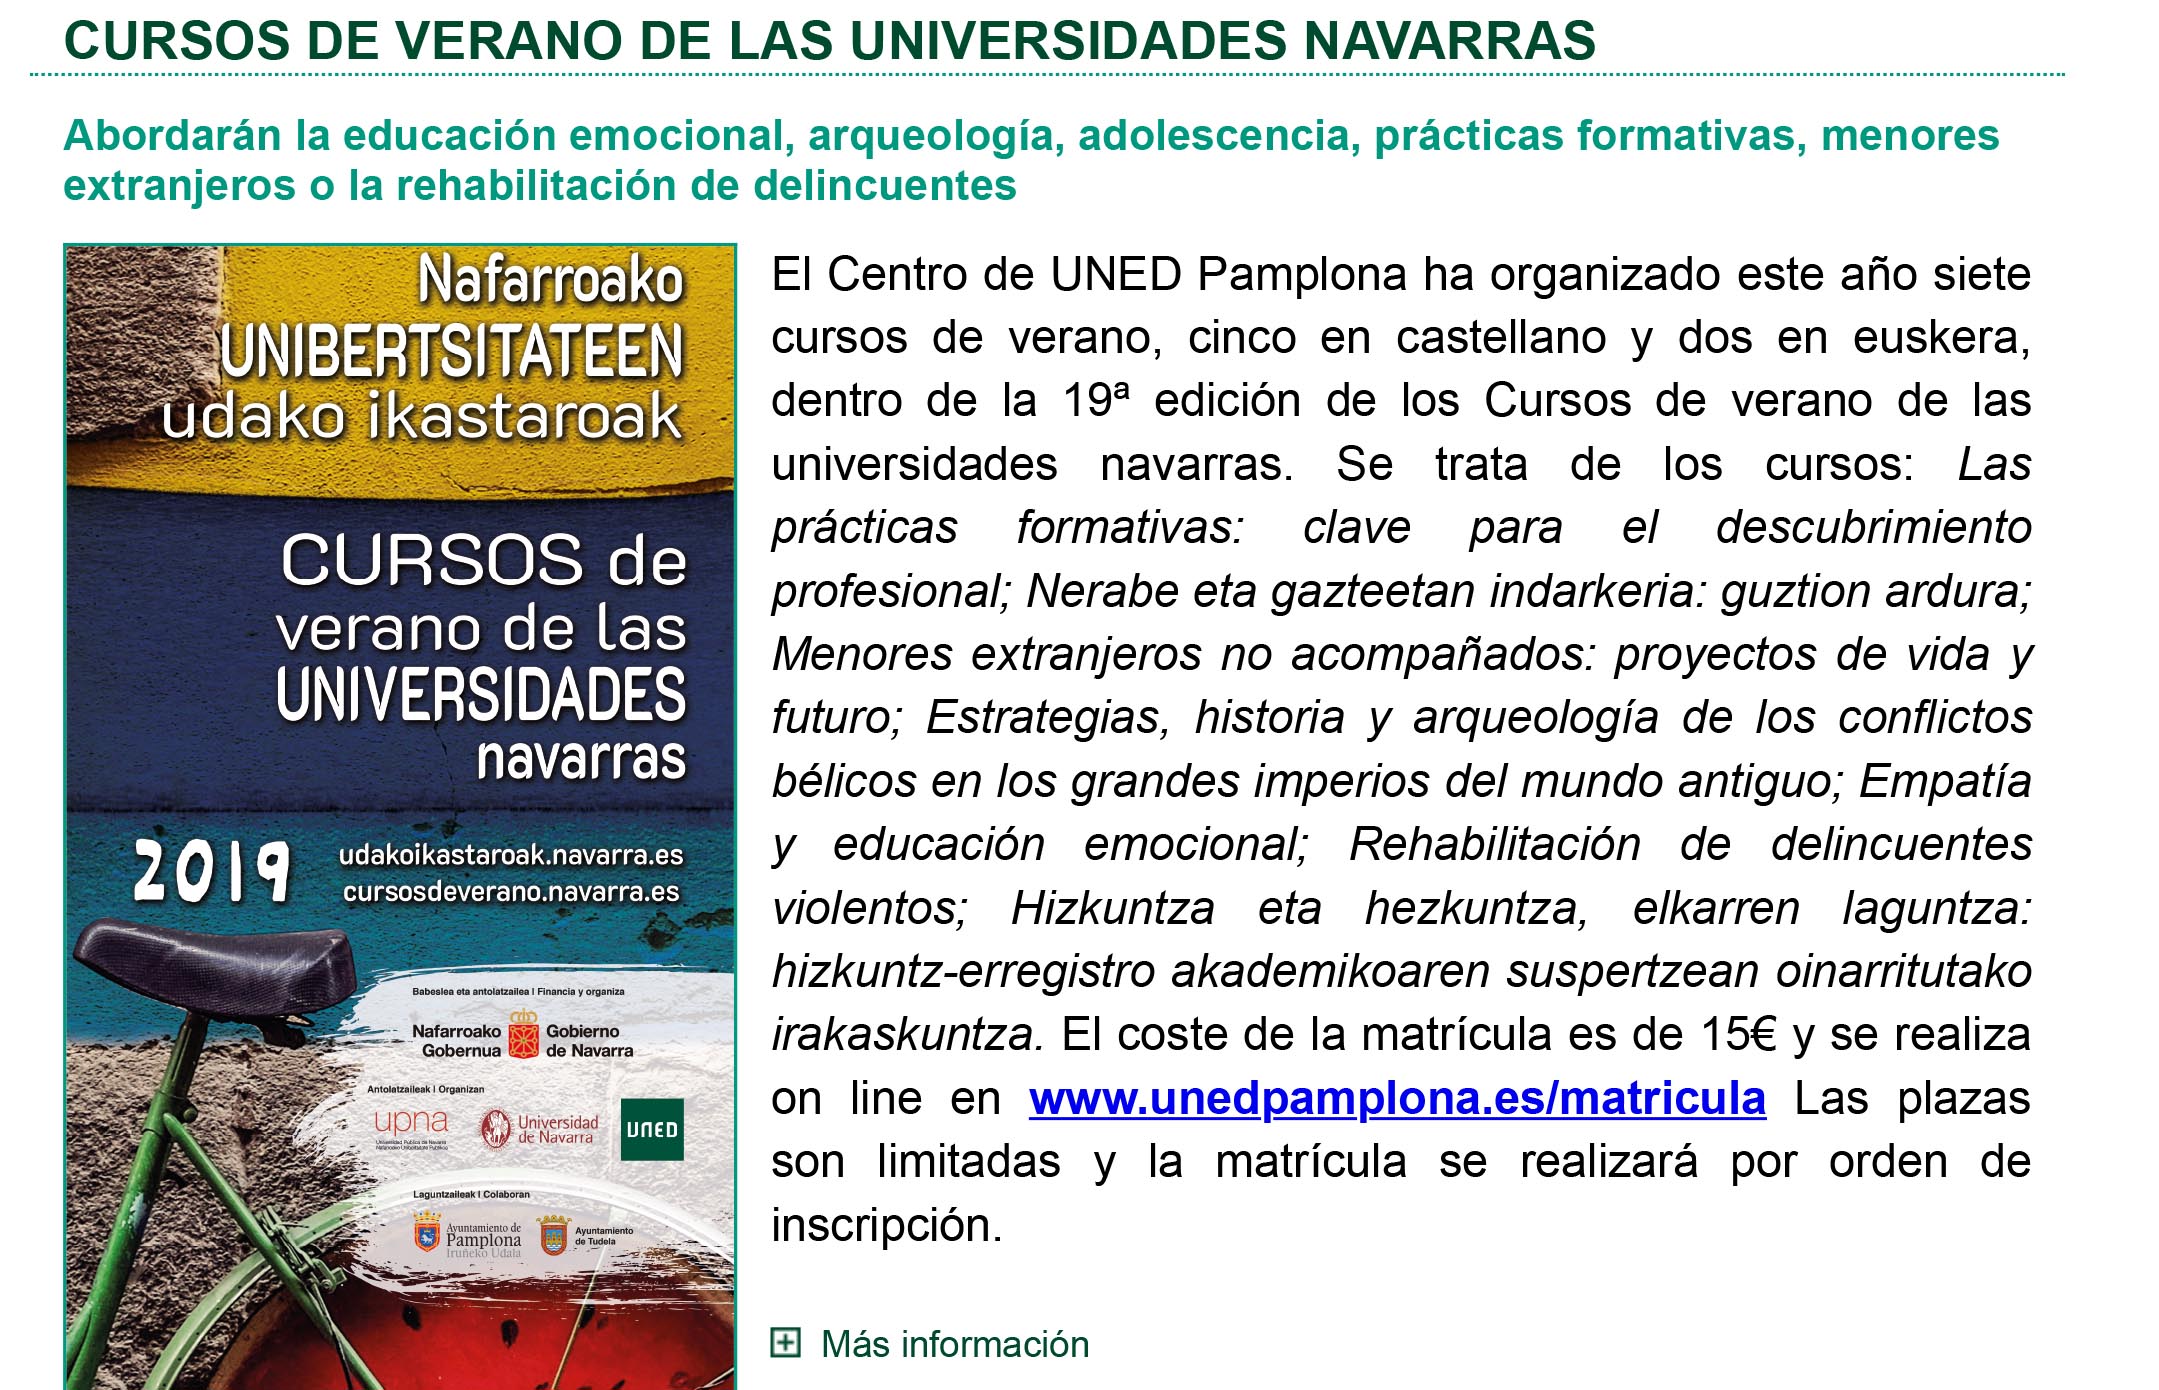 Publicado el boletín informativo de UNED Pamplona correspondiente al mes de junio